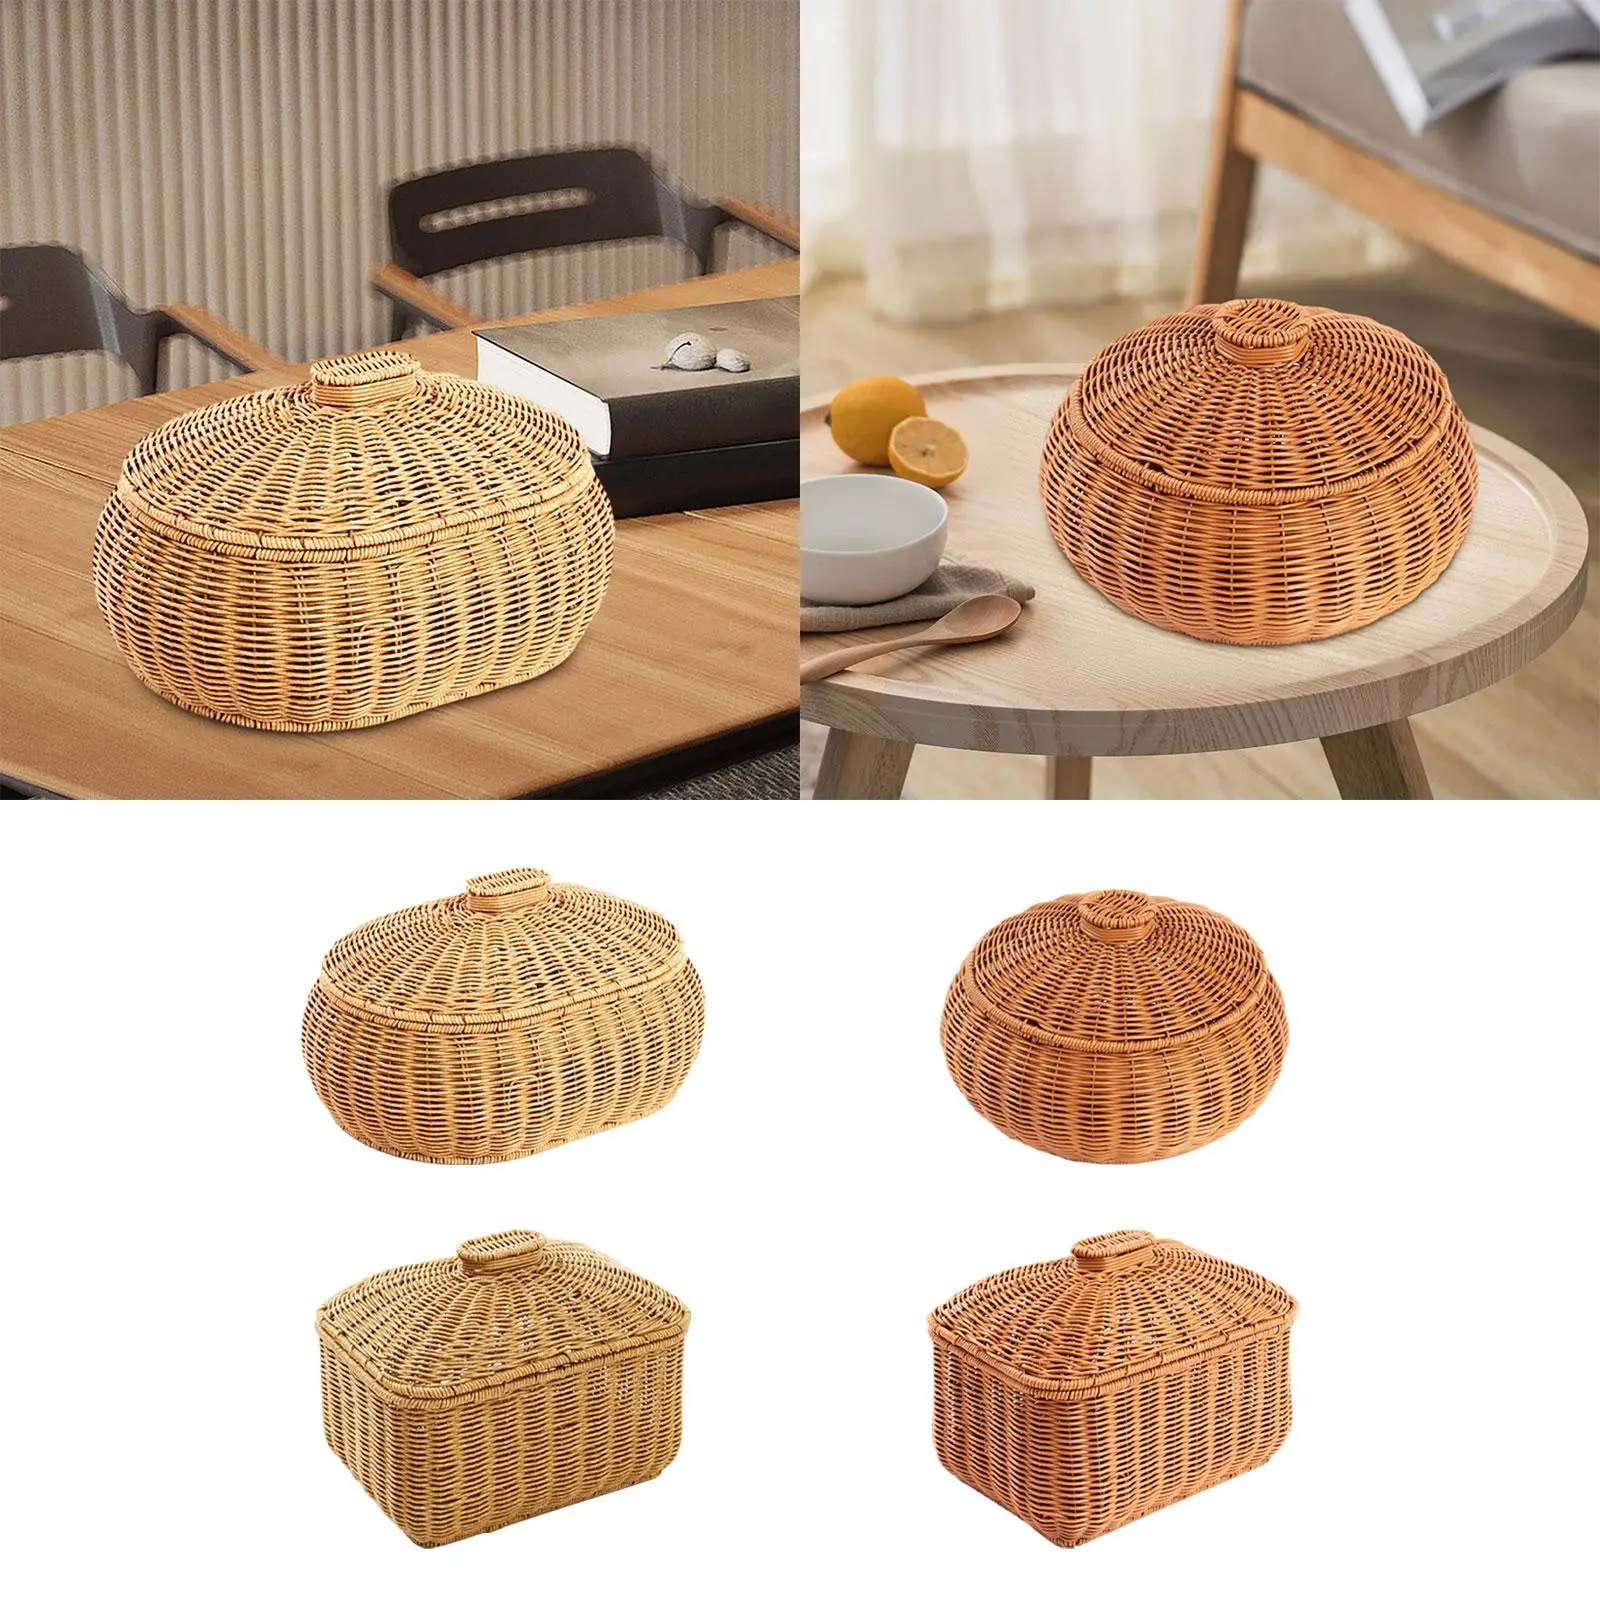 Handwoven Basket Food Serving Display Desk Clutter Organization Home Organizer for Bedroom Restaurant Living Room Home Kitchen